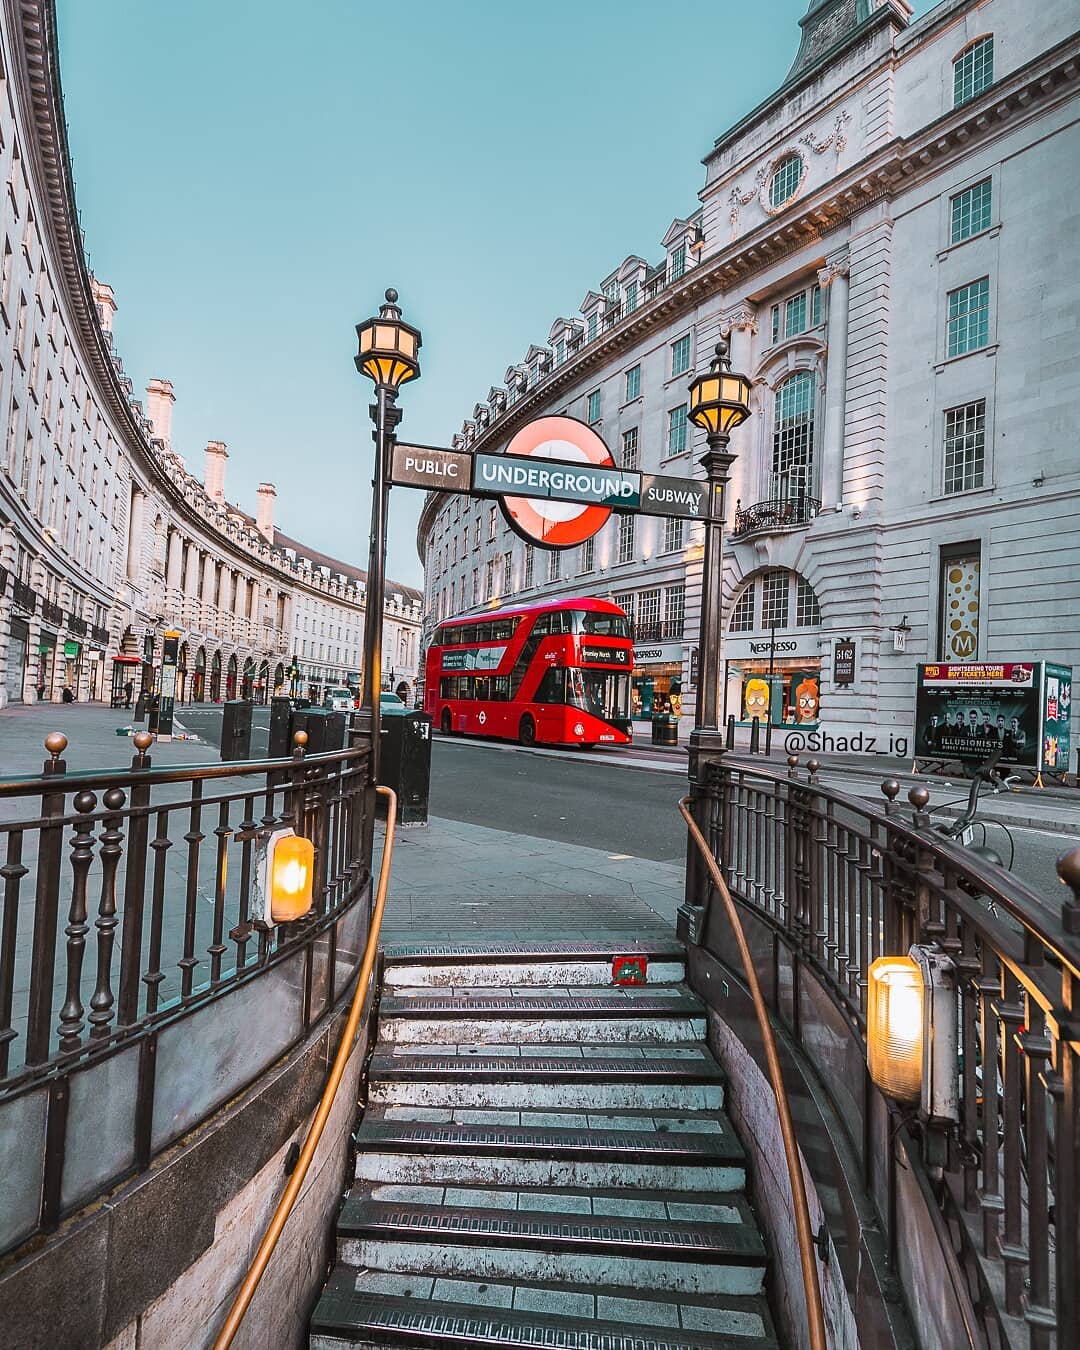 أفضل 5 من شوارع لندن السياحية يوصى بزيارتها